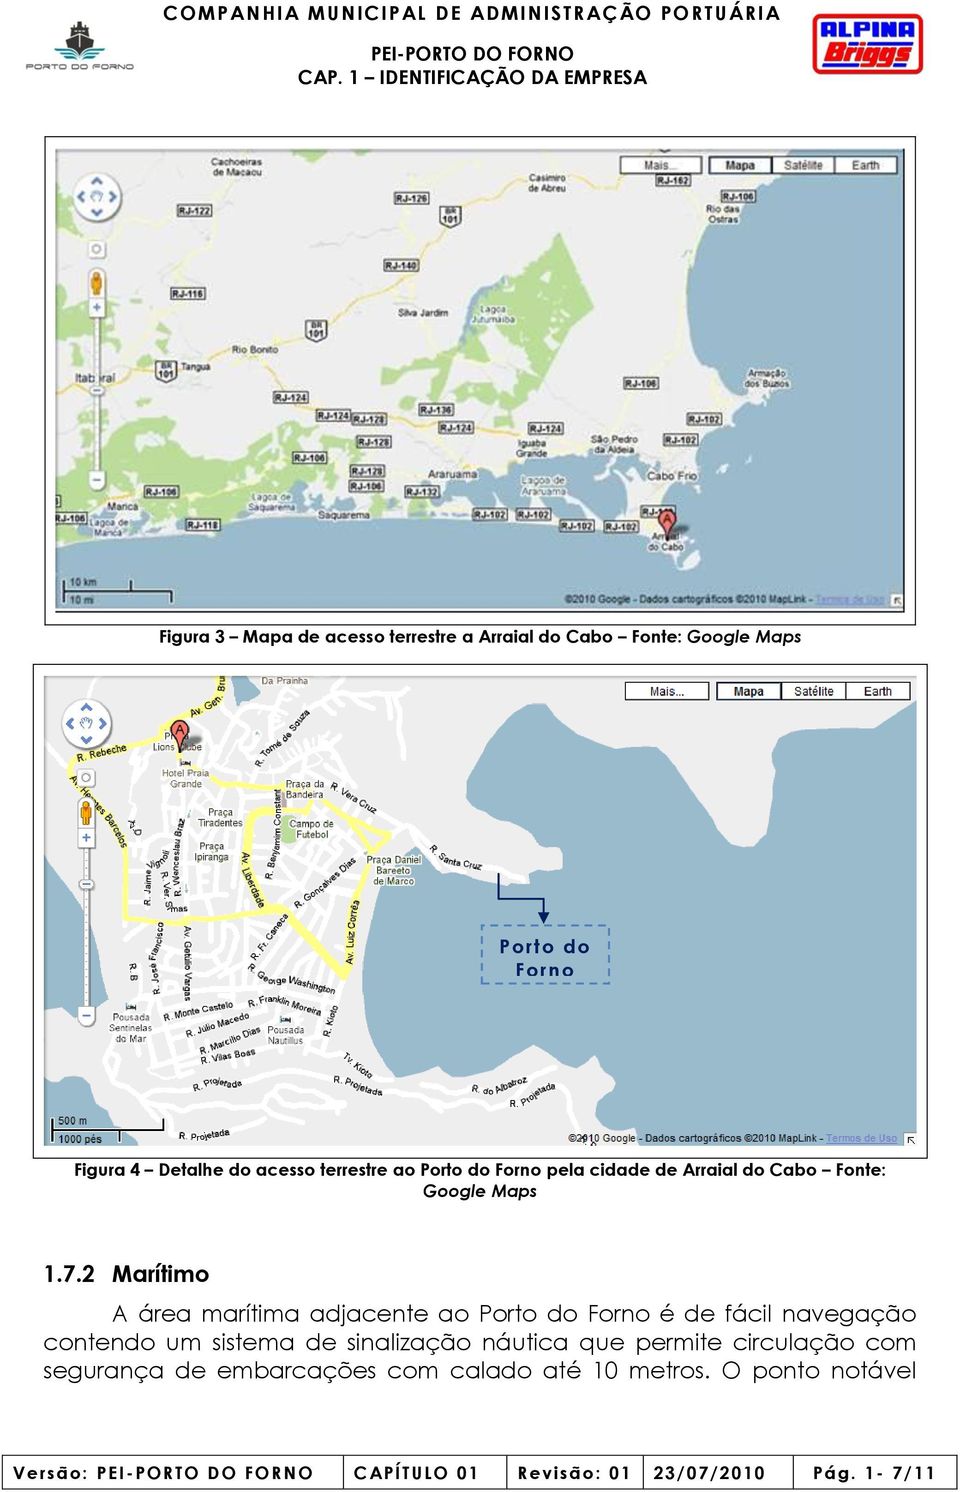 2 Marítimo A área marítima adjacente ao Porto do Forno é de fácil navegação contendo um sistema de sinalização